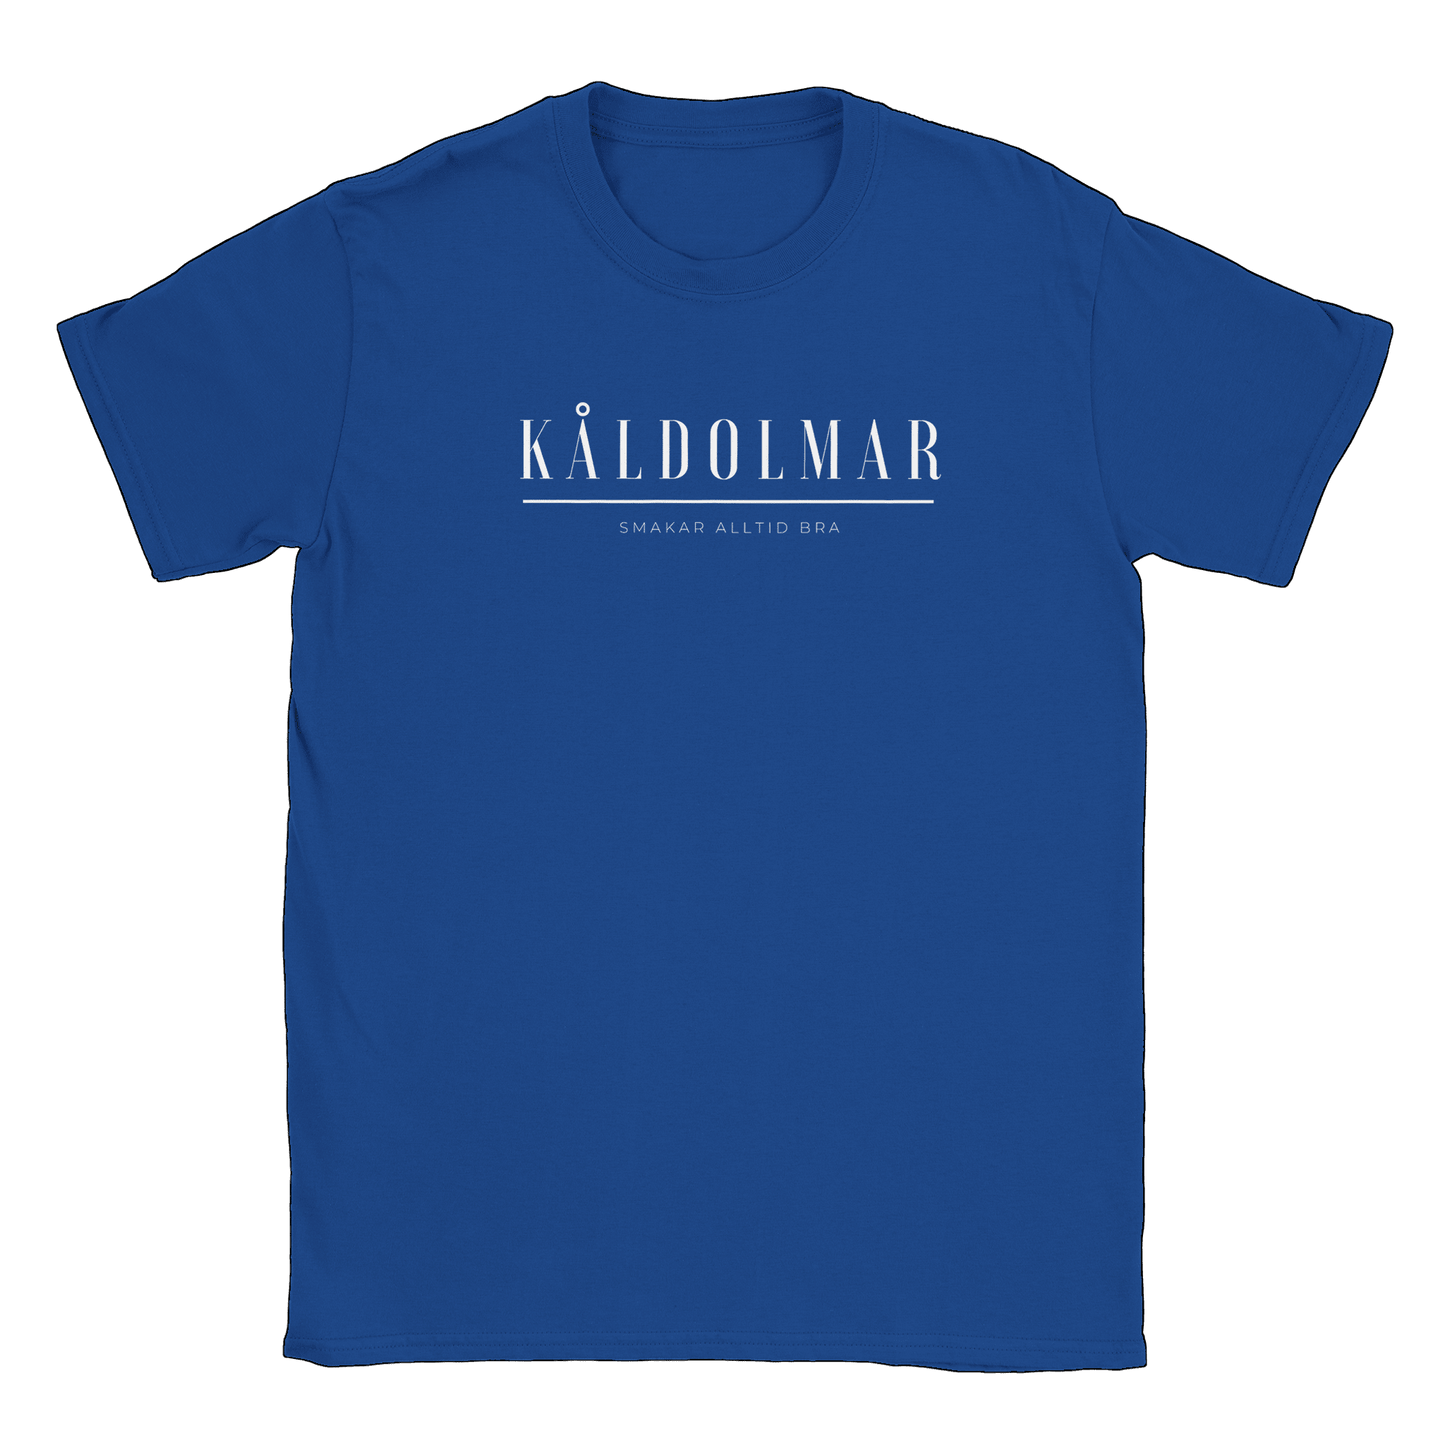 Kåldolmar - T-shirt Royal